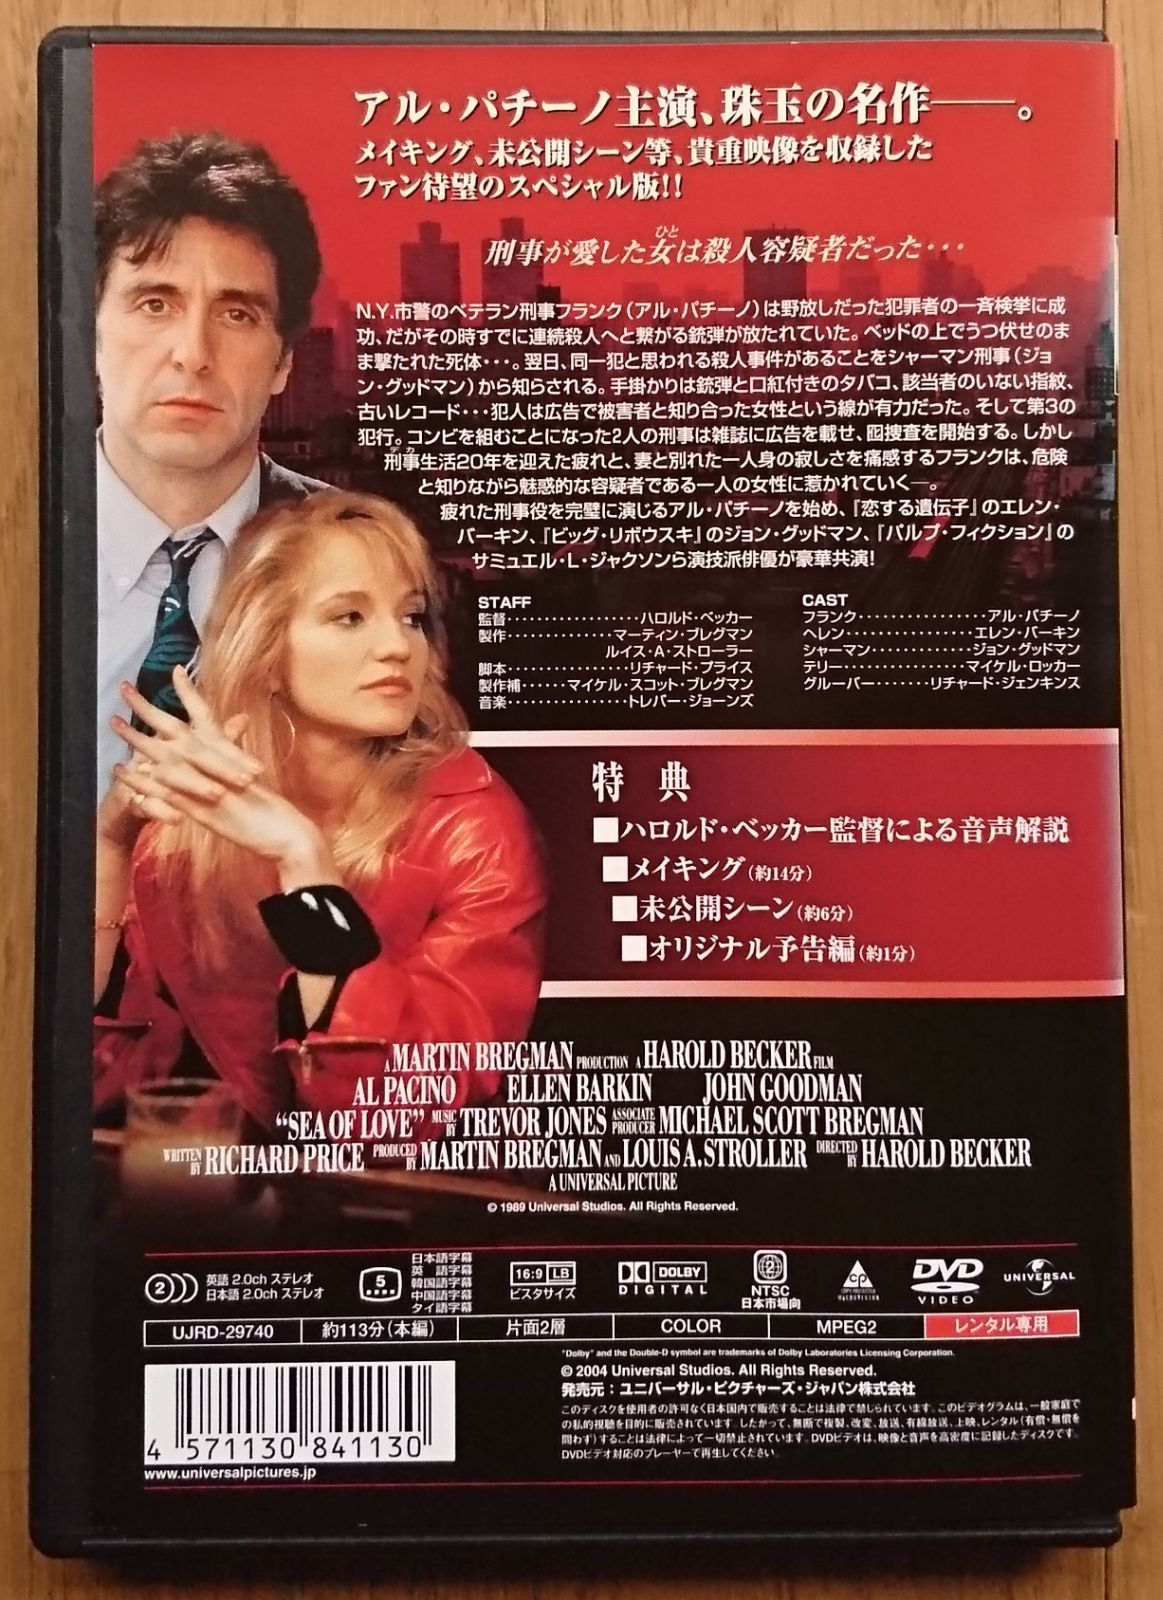 【レンタル版DVD】シー・オブ・ラブ 出演:アル・パチーノ/エレン・バーキン